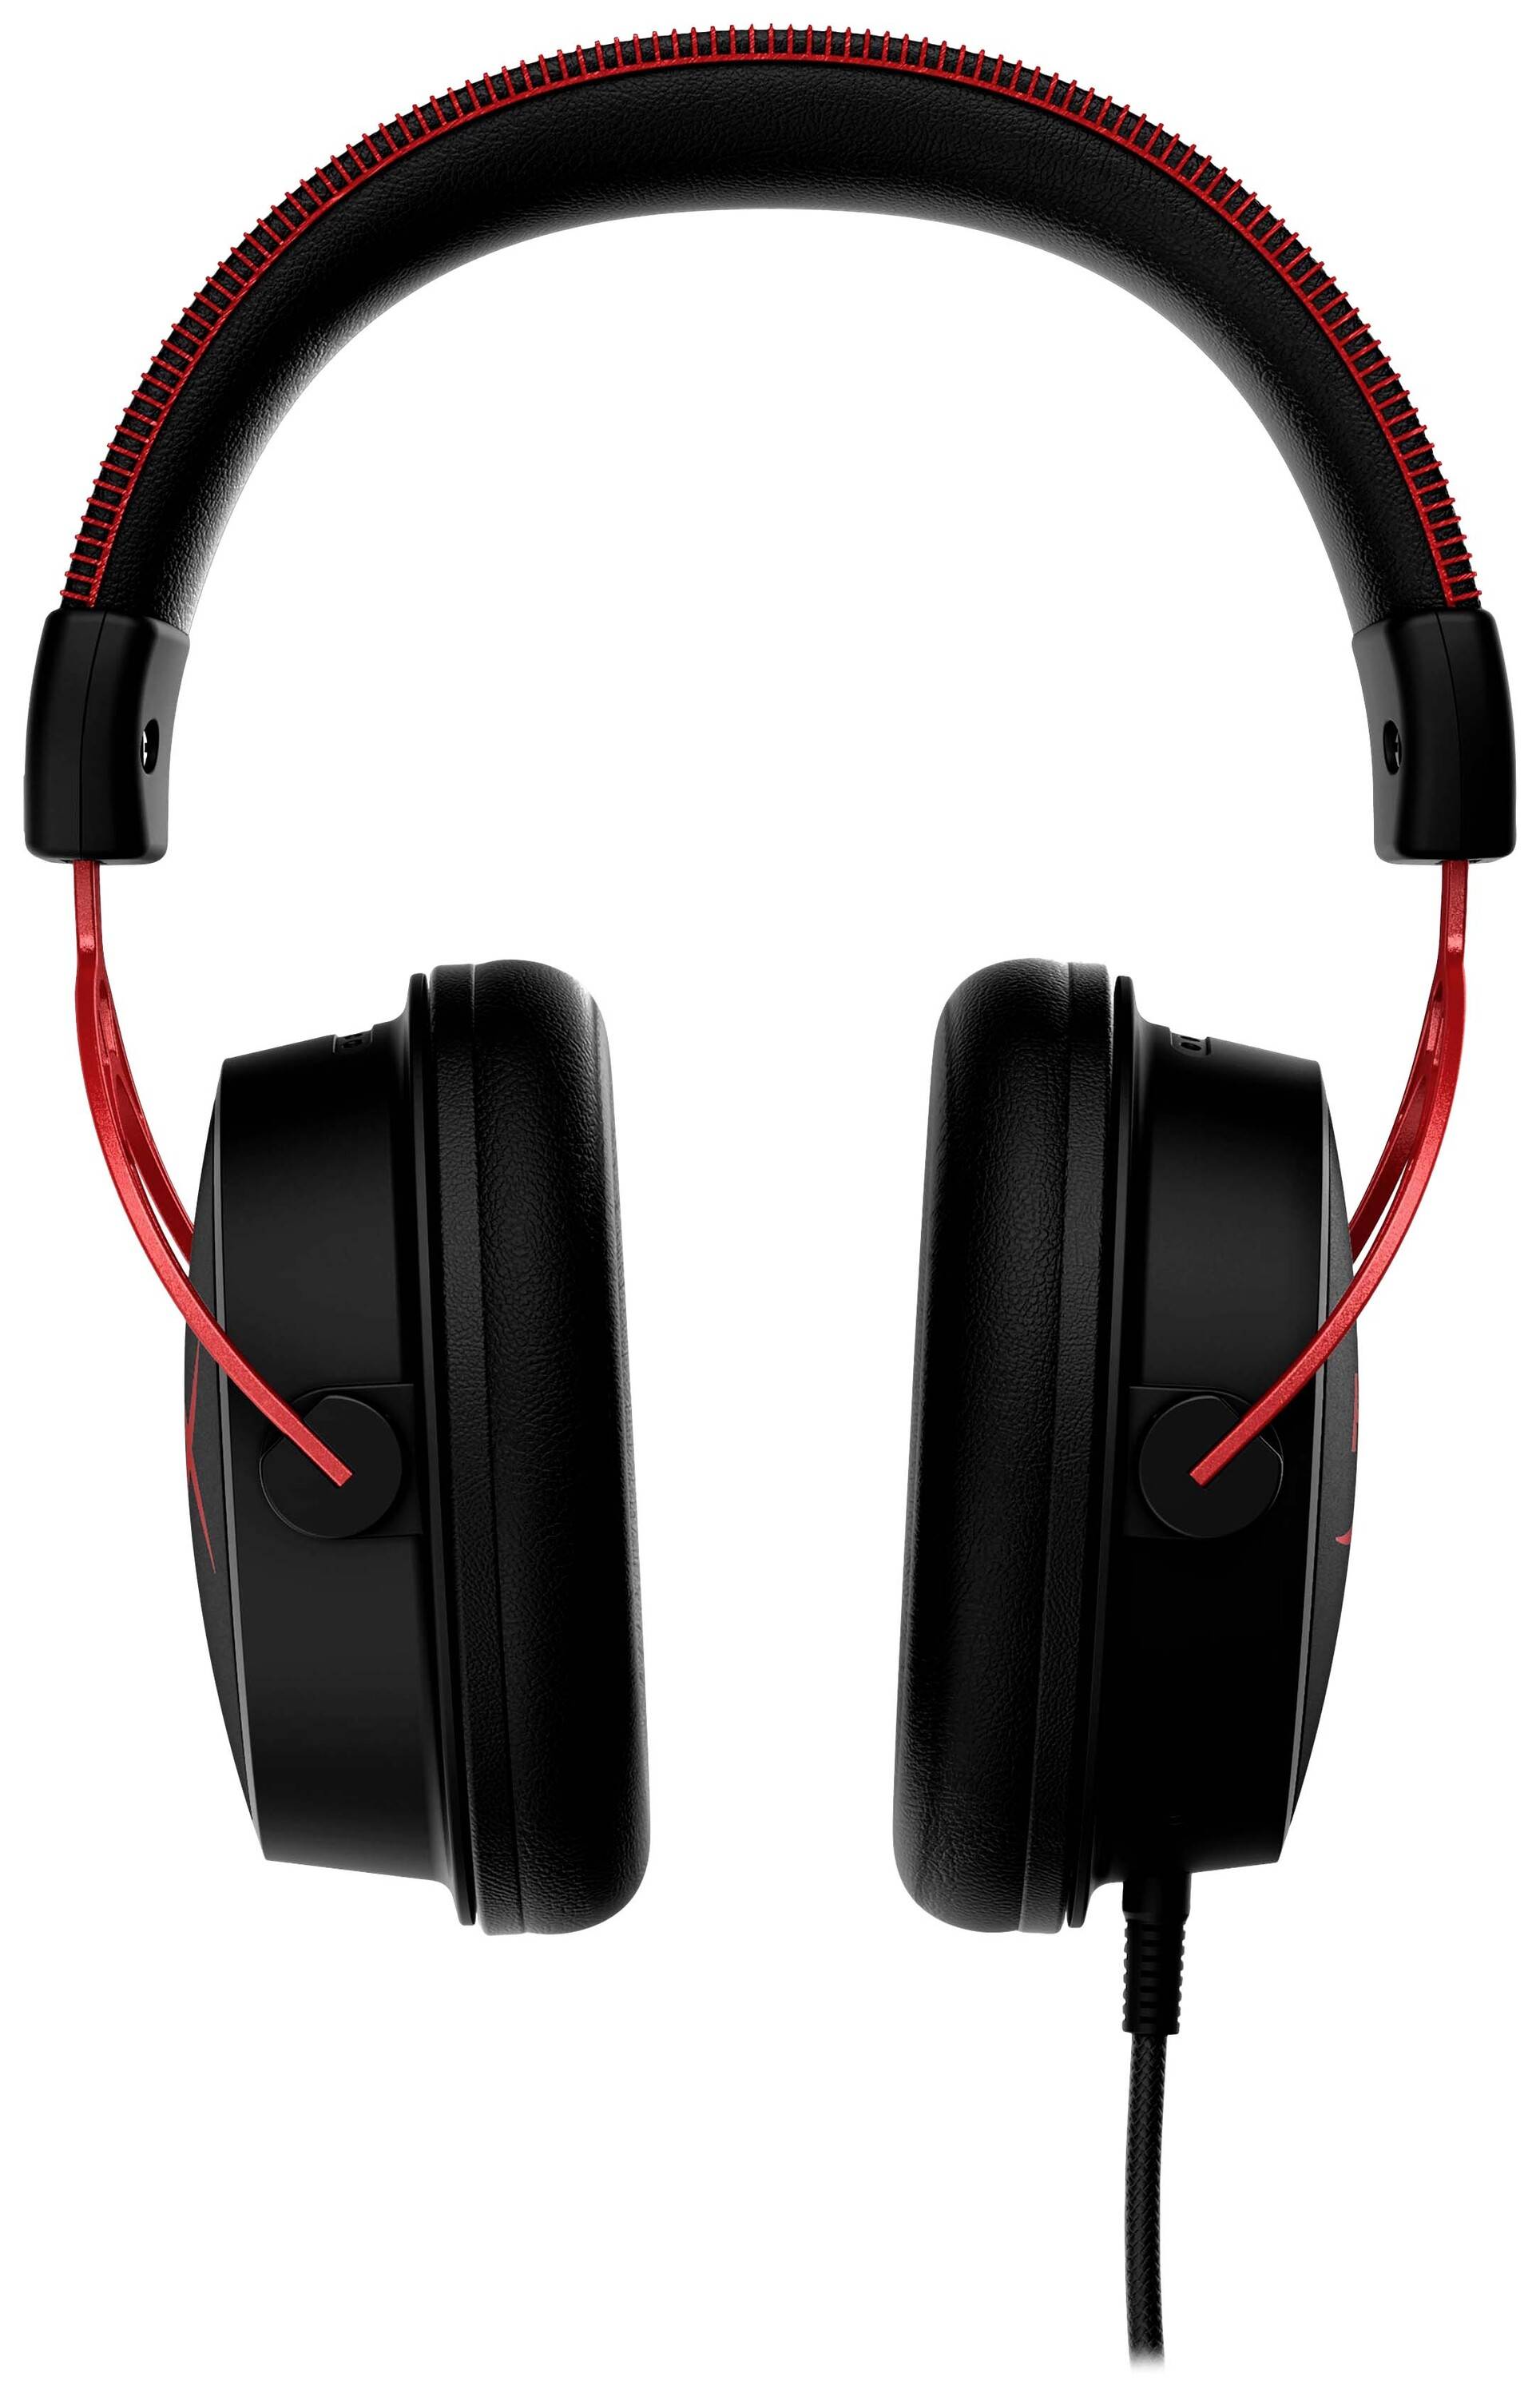 KINGSTON HyperX Cloud Alpha Red Gaming Over Ear Headset kabelgebunden Stereo Schwarz/Rot Lautstärker